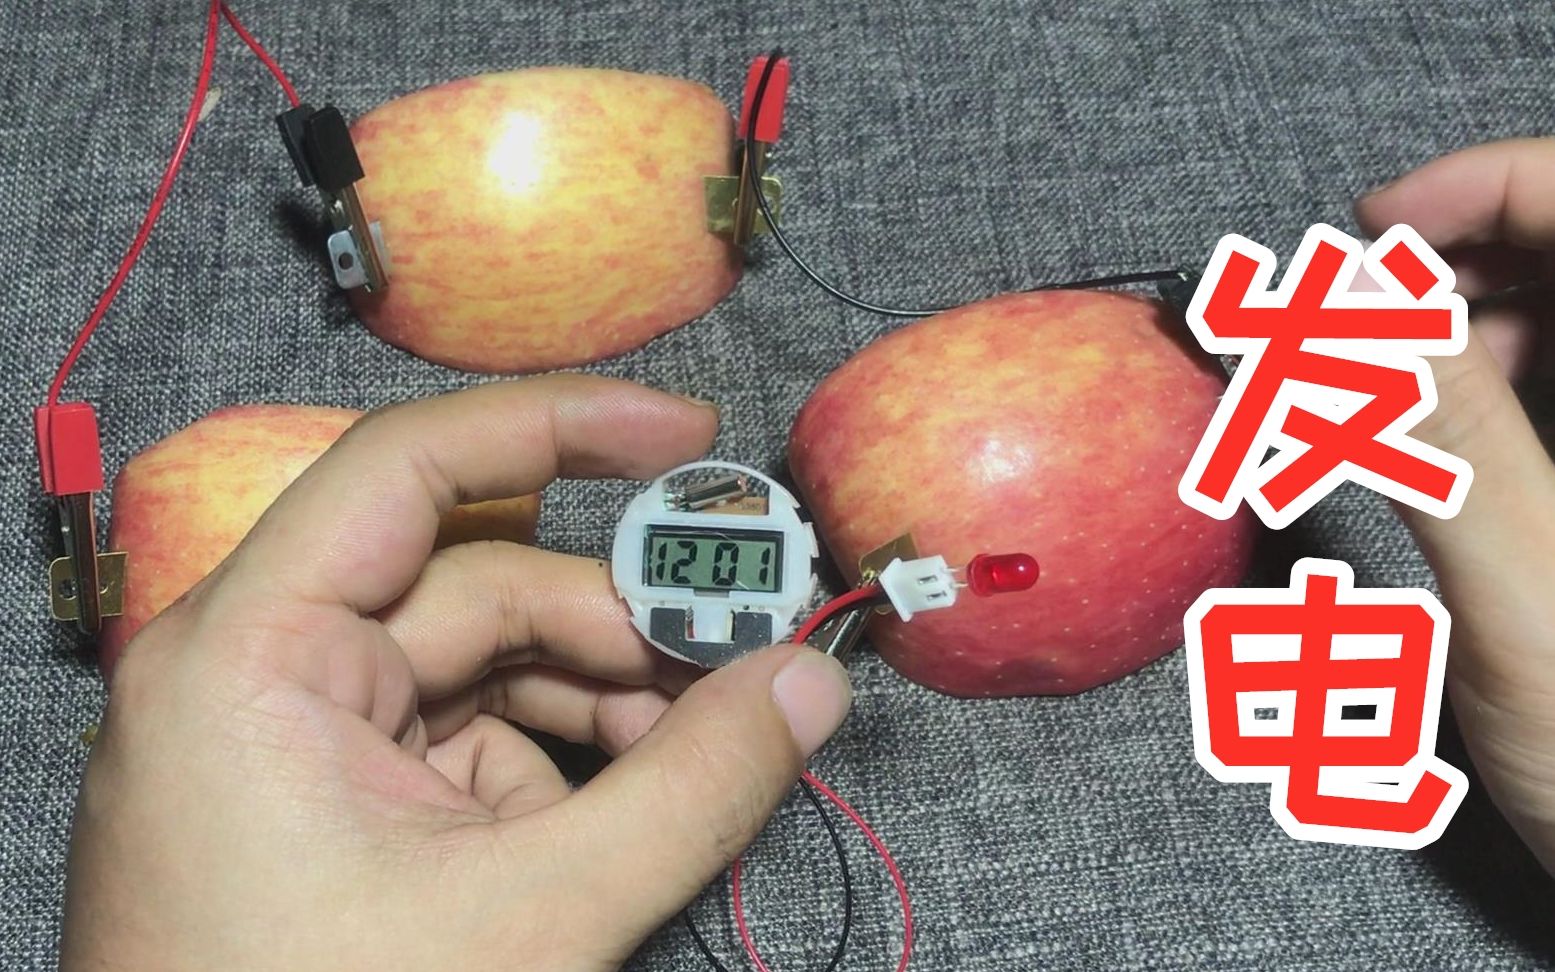 水果能发电是真的吗用一个苹果做实验效果很明显